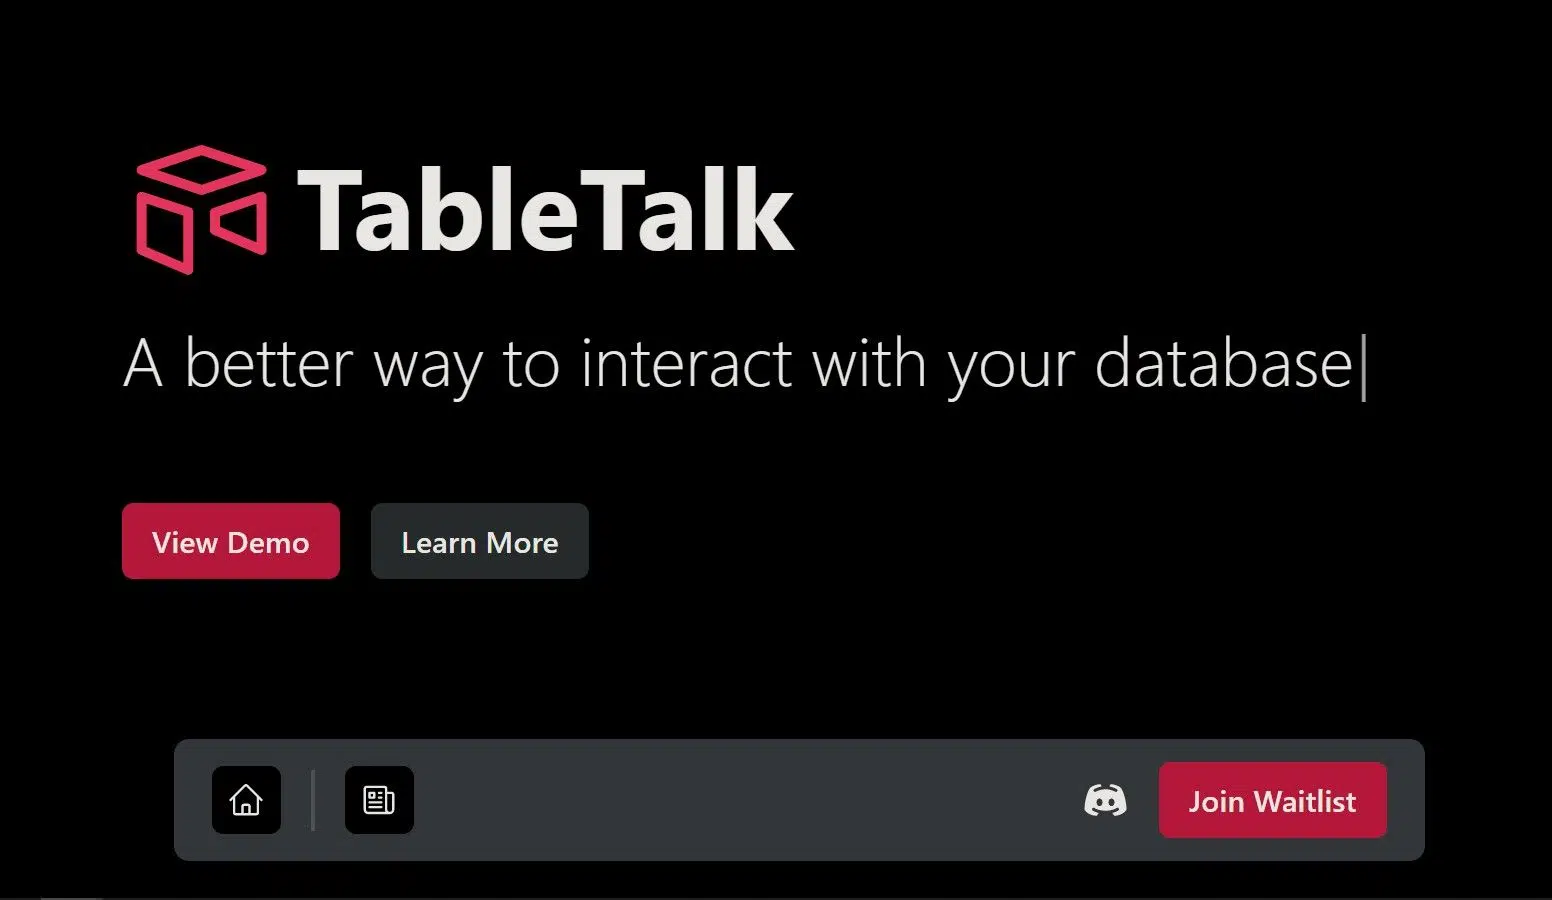 TableTalkwebsite picture